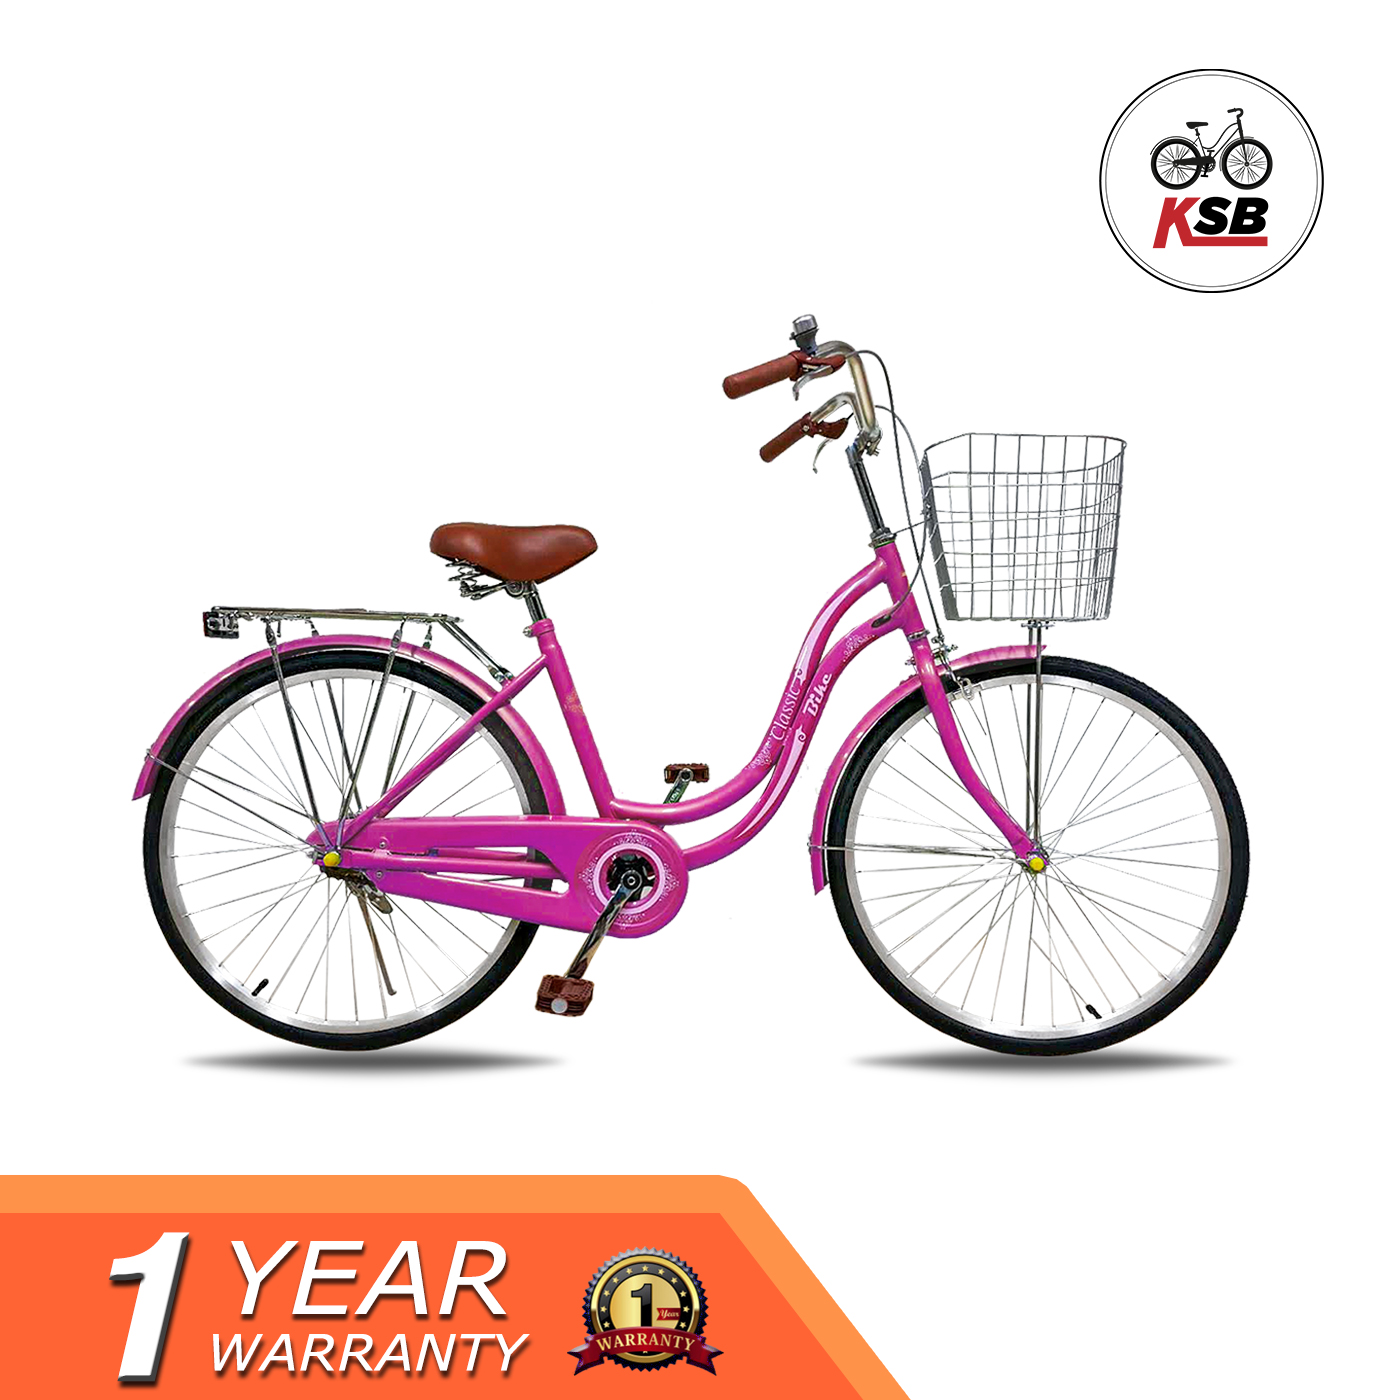 จักรยานแม่บ้าน KSB ทรงญี่ปุ่น รุ่นClassic ขายดี สีชมพู มาเจนต้าร์ 24 นิ้ว